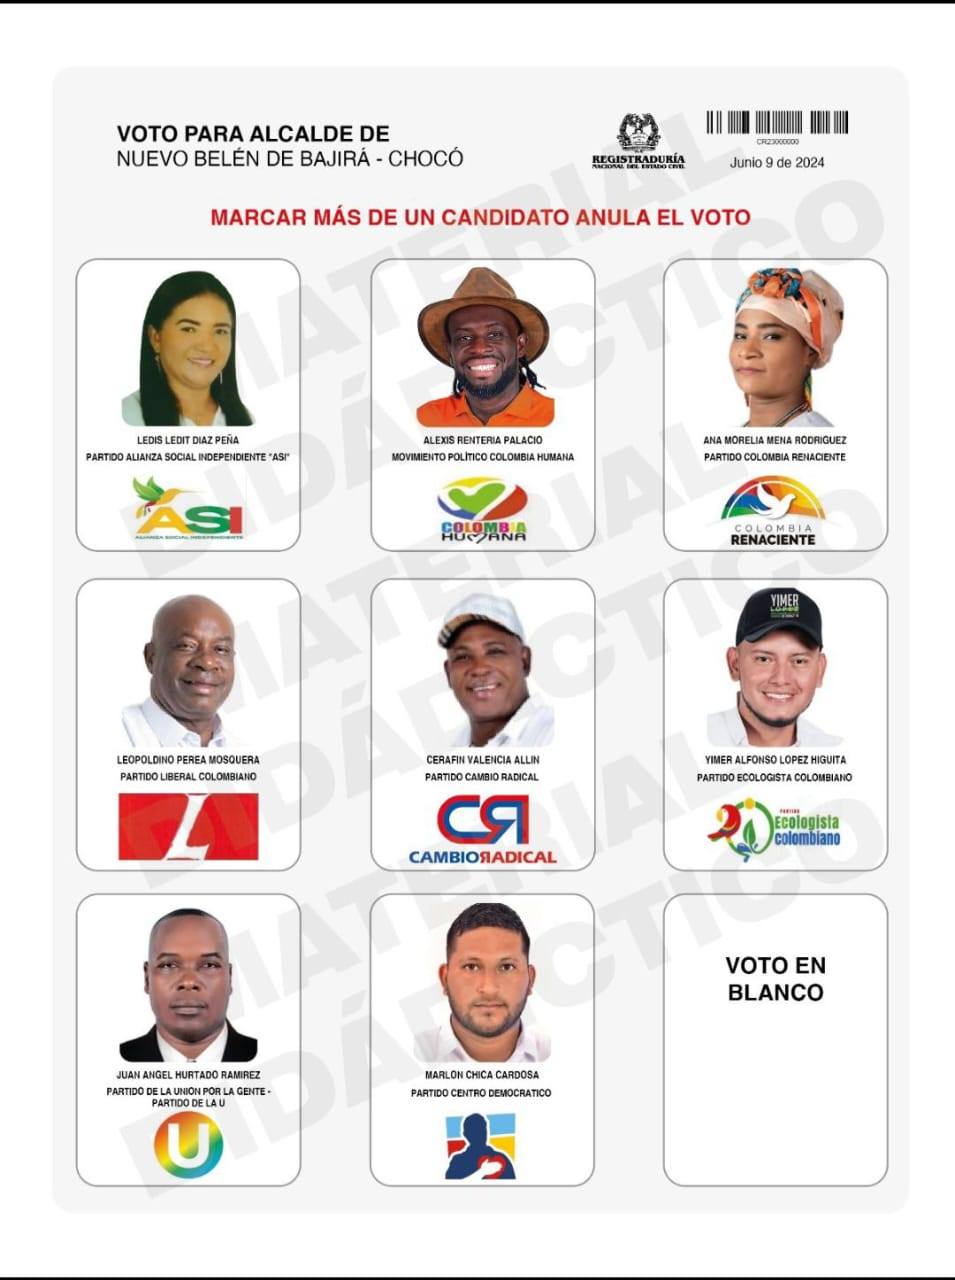 Tarjetón electoral Nuevo Belén de Bajirá, Chocó